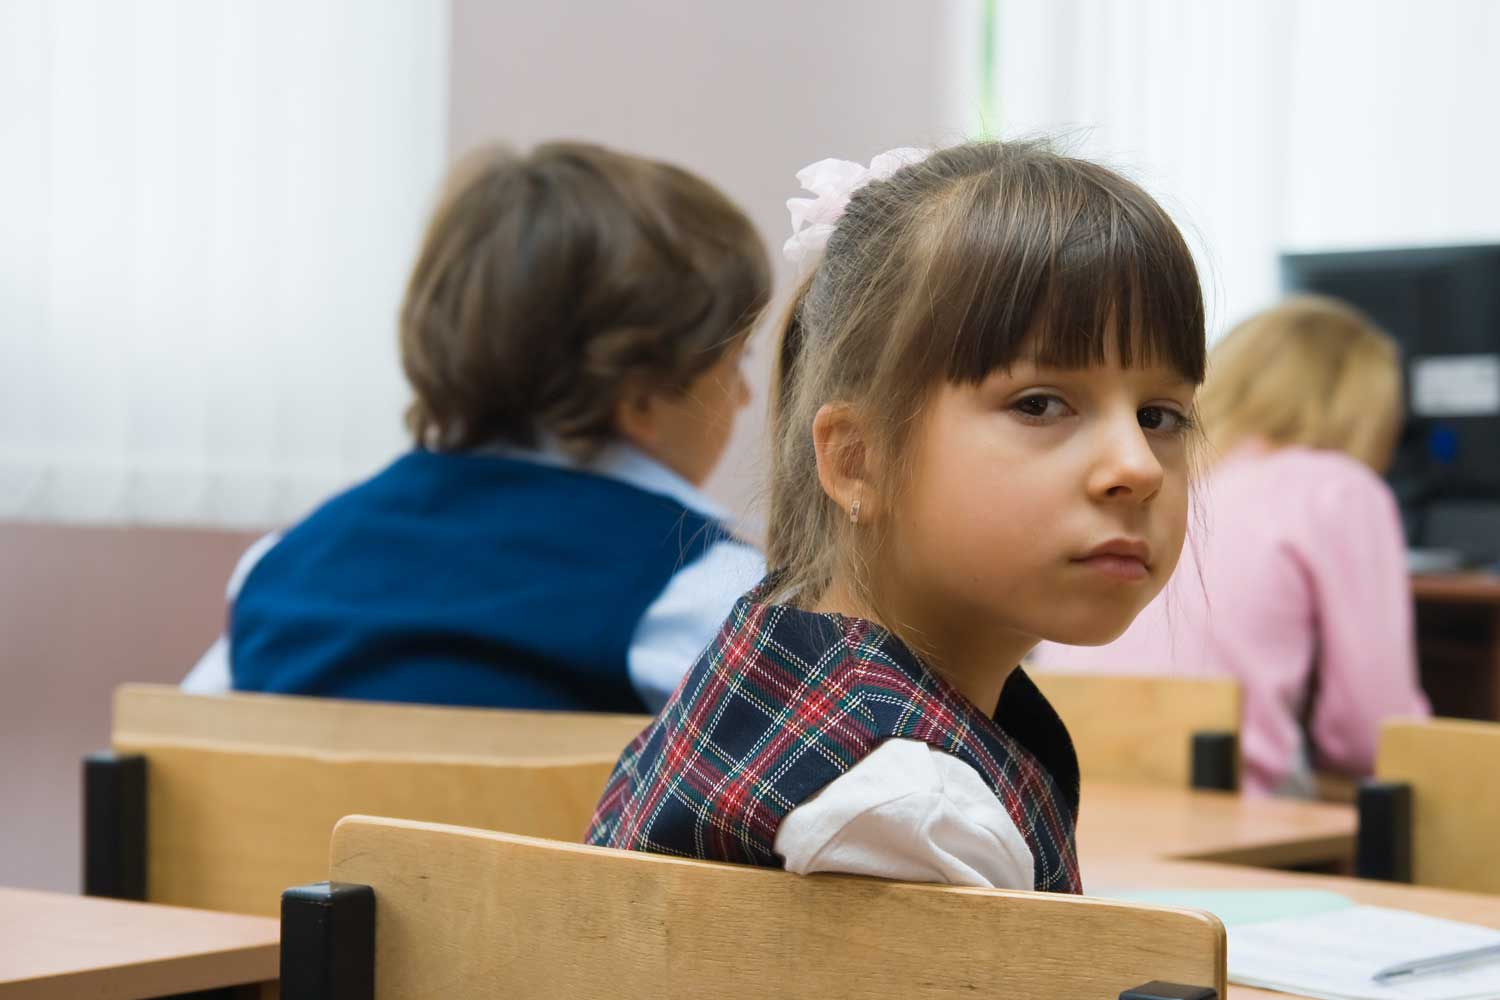 "Донецким и луганским детям надо дать больше прав на получение нормального образования в Украине", - эксперт